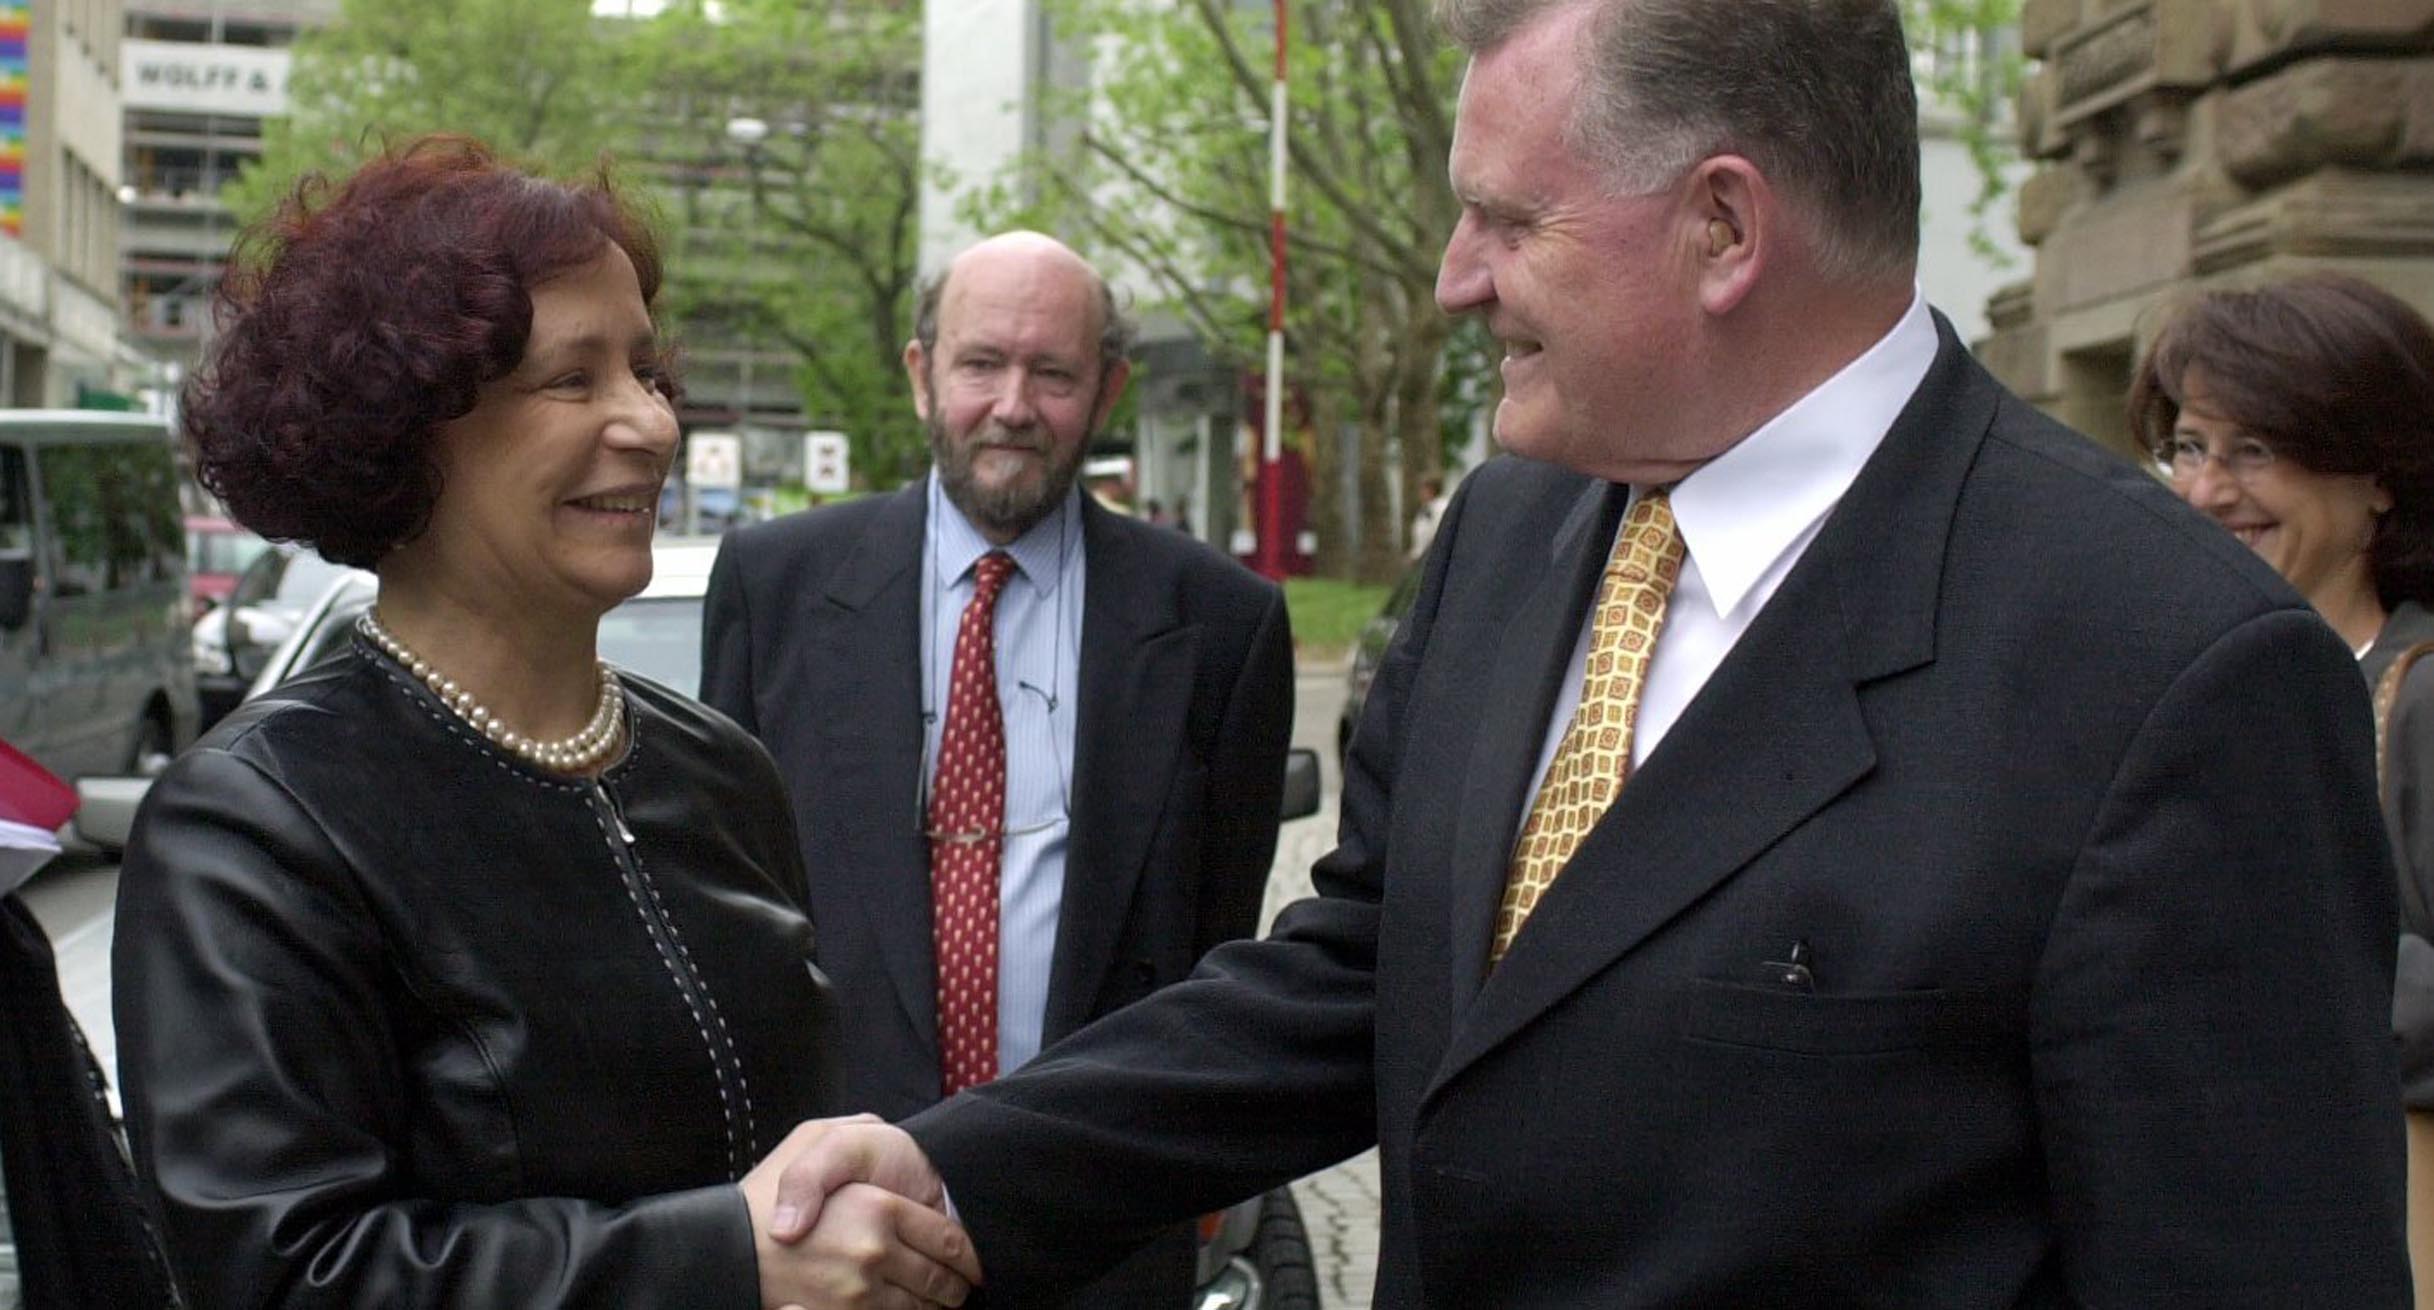 Der baden-württembergische Ministerpräsident Erwin Teufel (rechts) begrüßt die spanische Außenministerin Ana Palacio (links) in Stuttgart vor dem Haus der Wirtschaft.